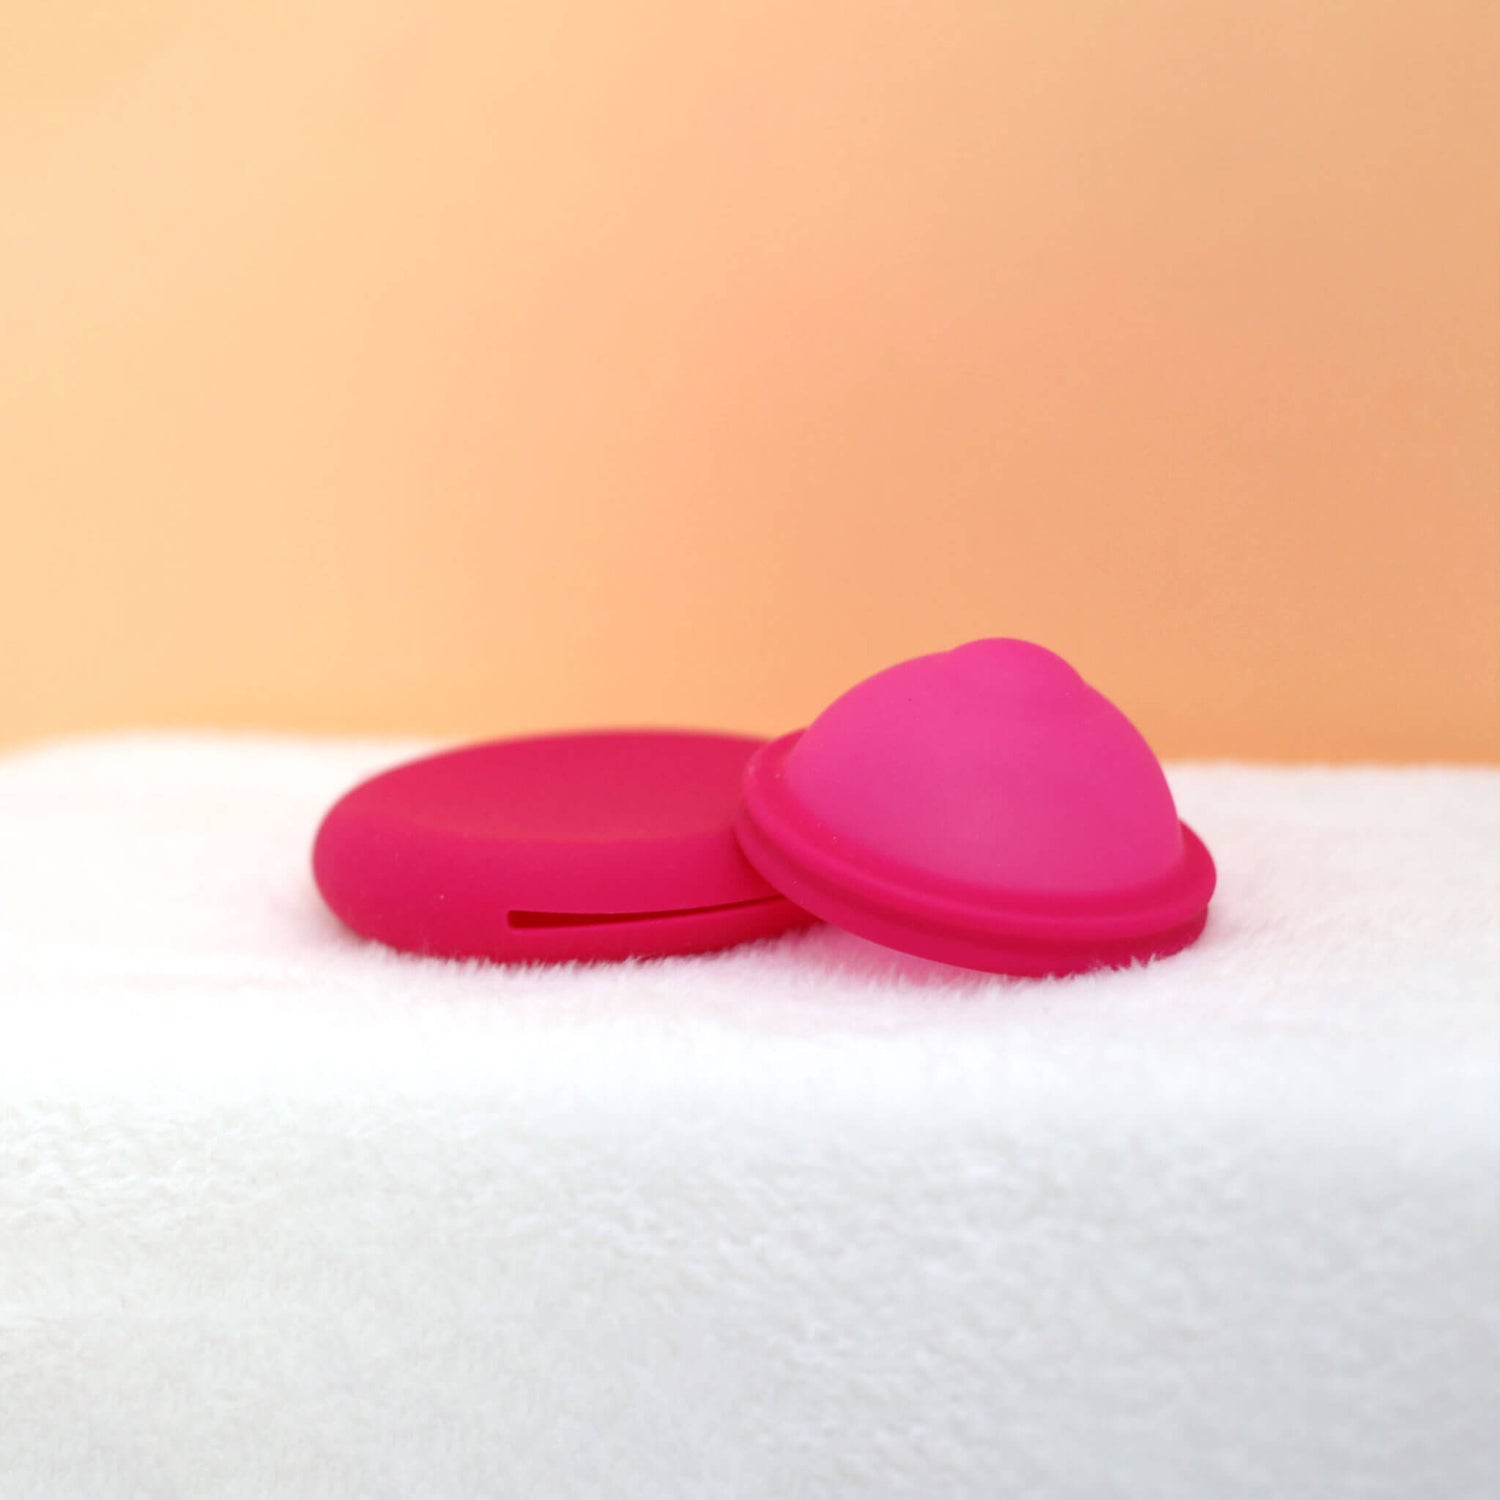 Disque menstruel discoh coloris fuchsia taille S. Sur fond crème posé sur sa pochette en silicone